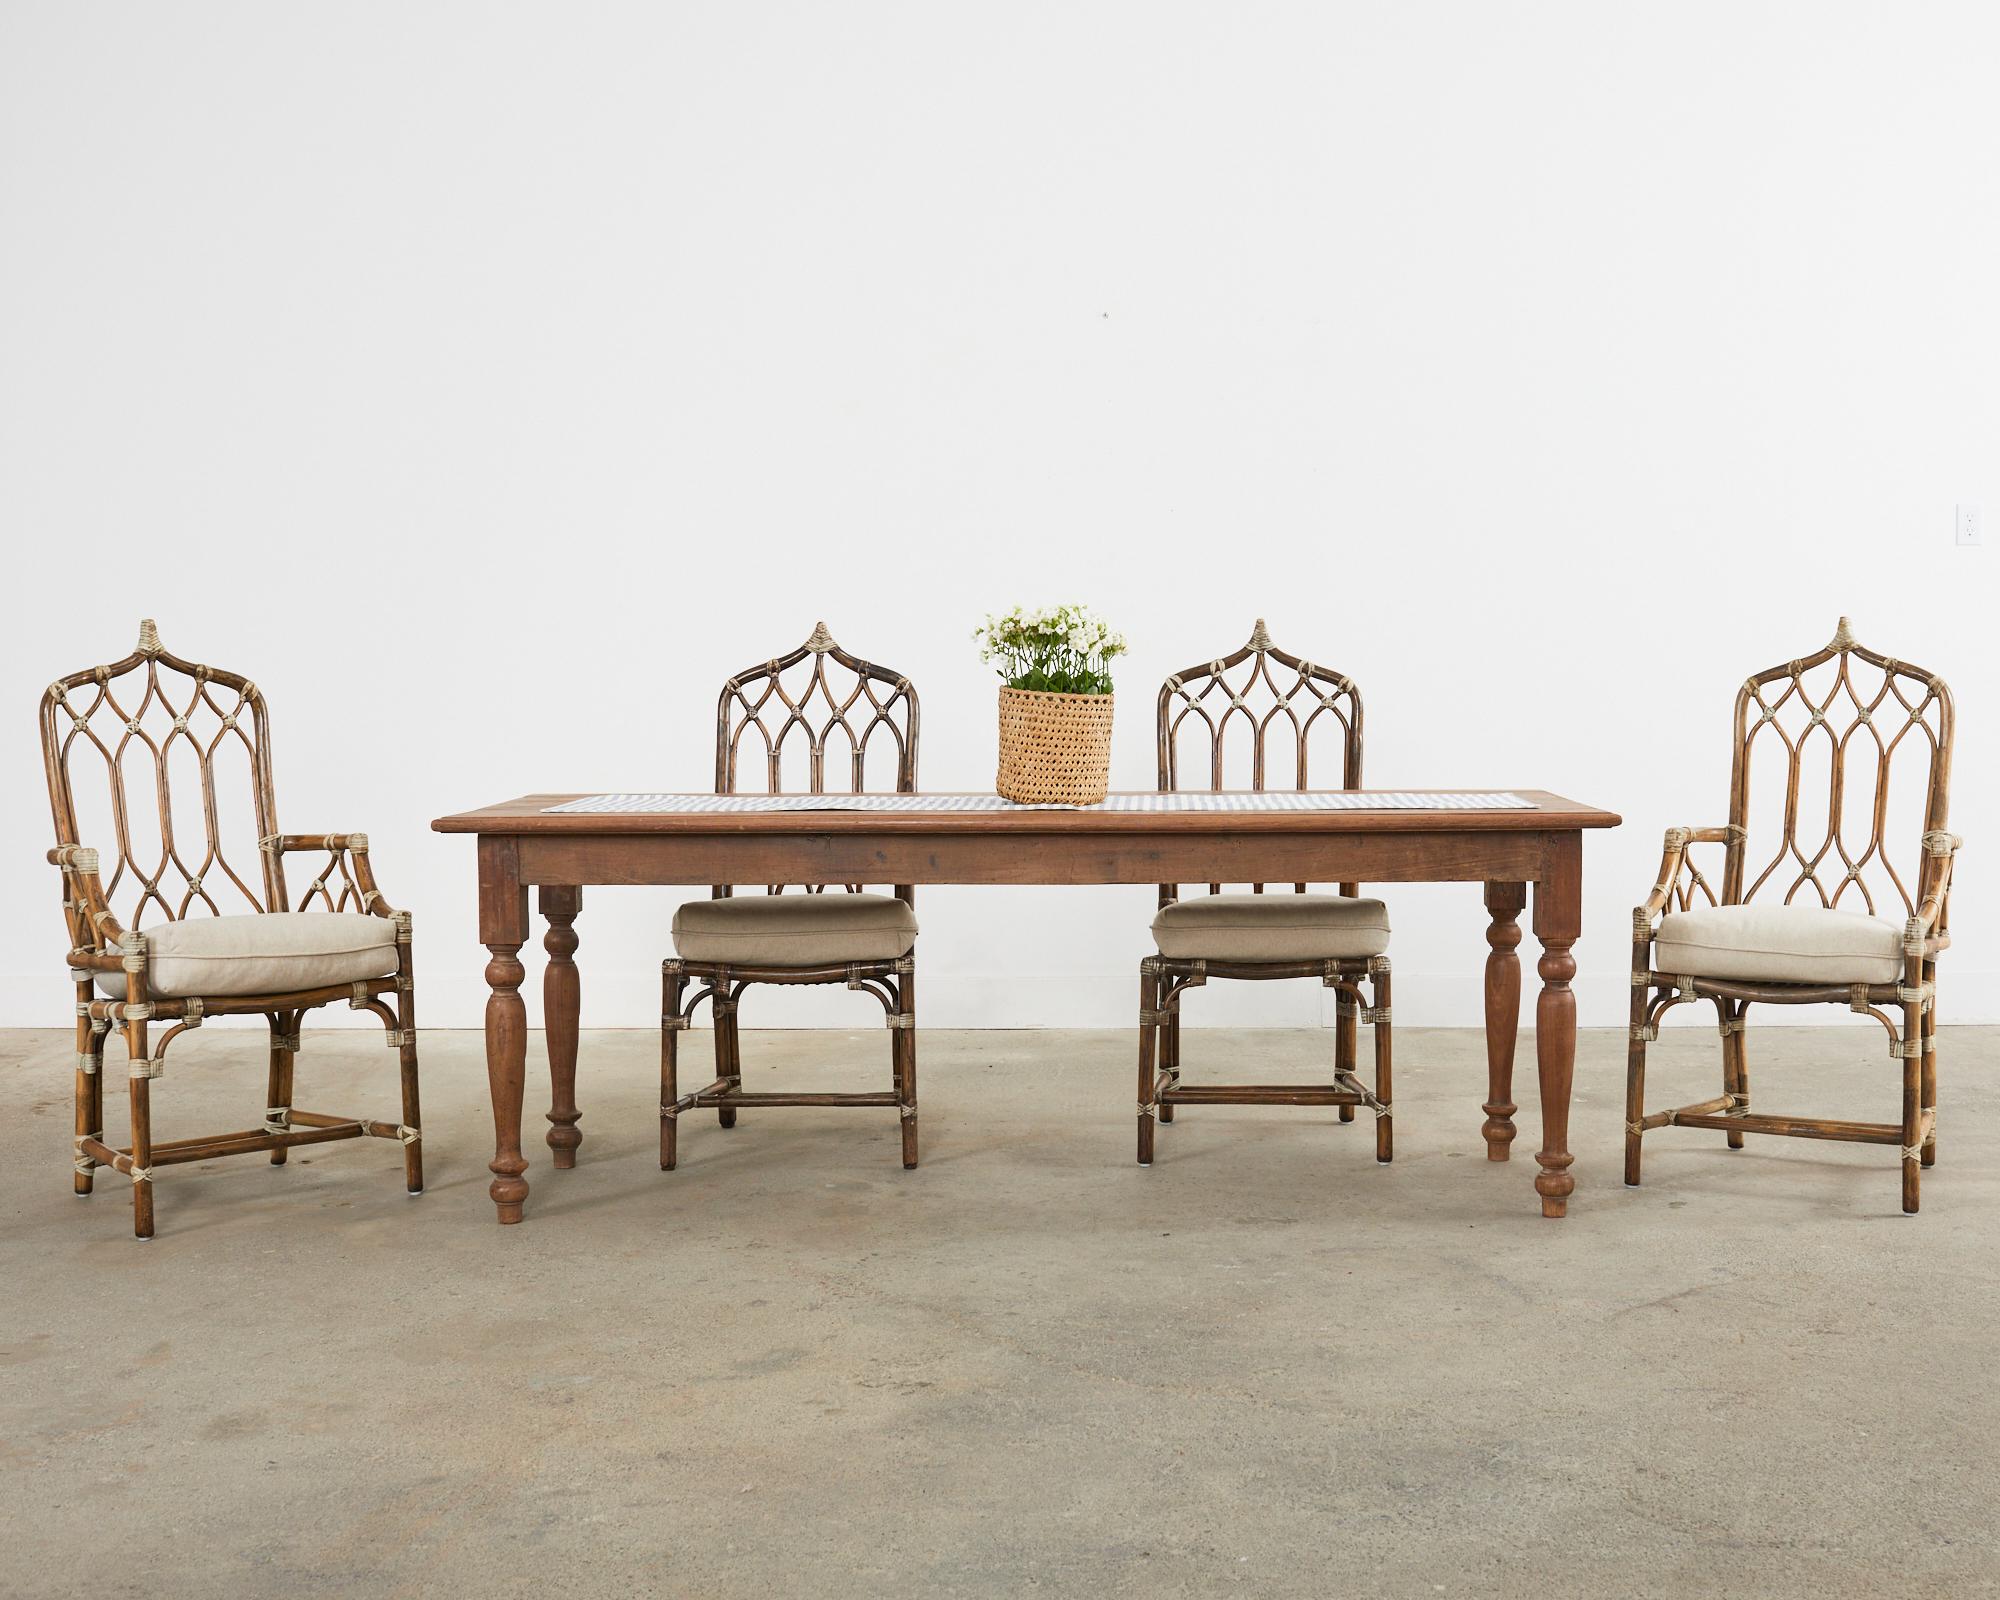 Ensemble iconique de quatre chaises de salle à manger en rotin moderne et organique fabriqué par McGuire. Les chaises de salle à manger de style 